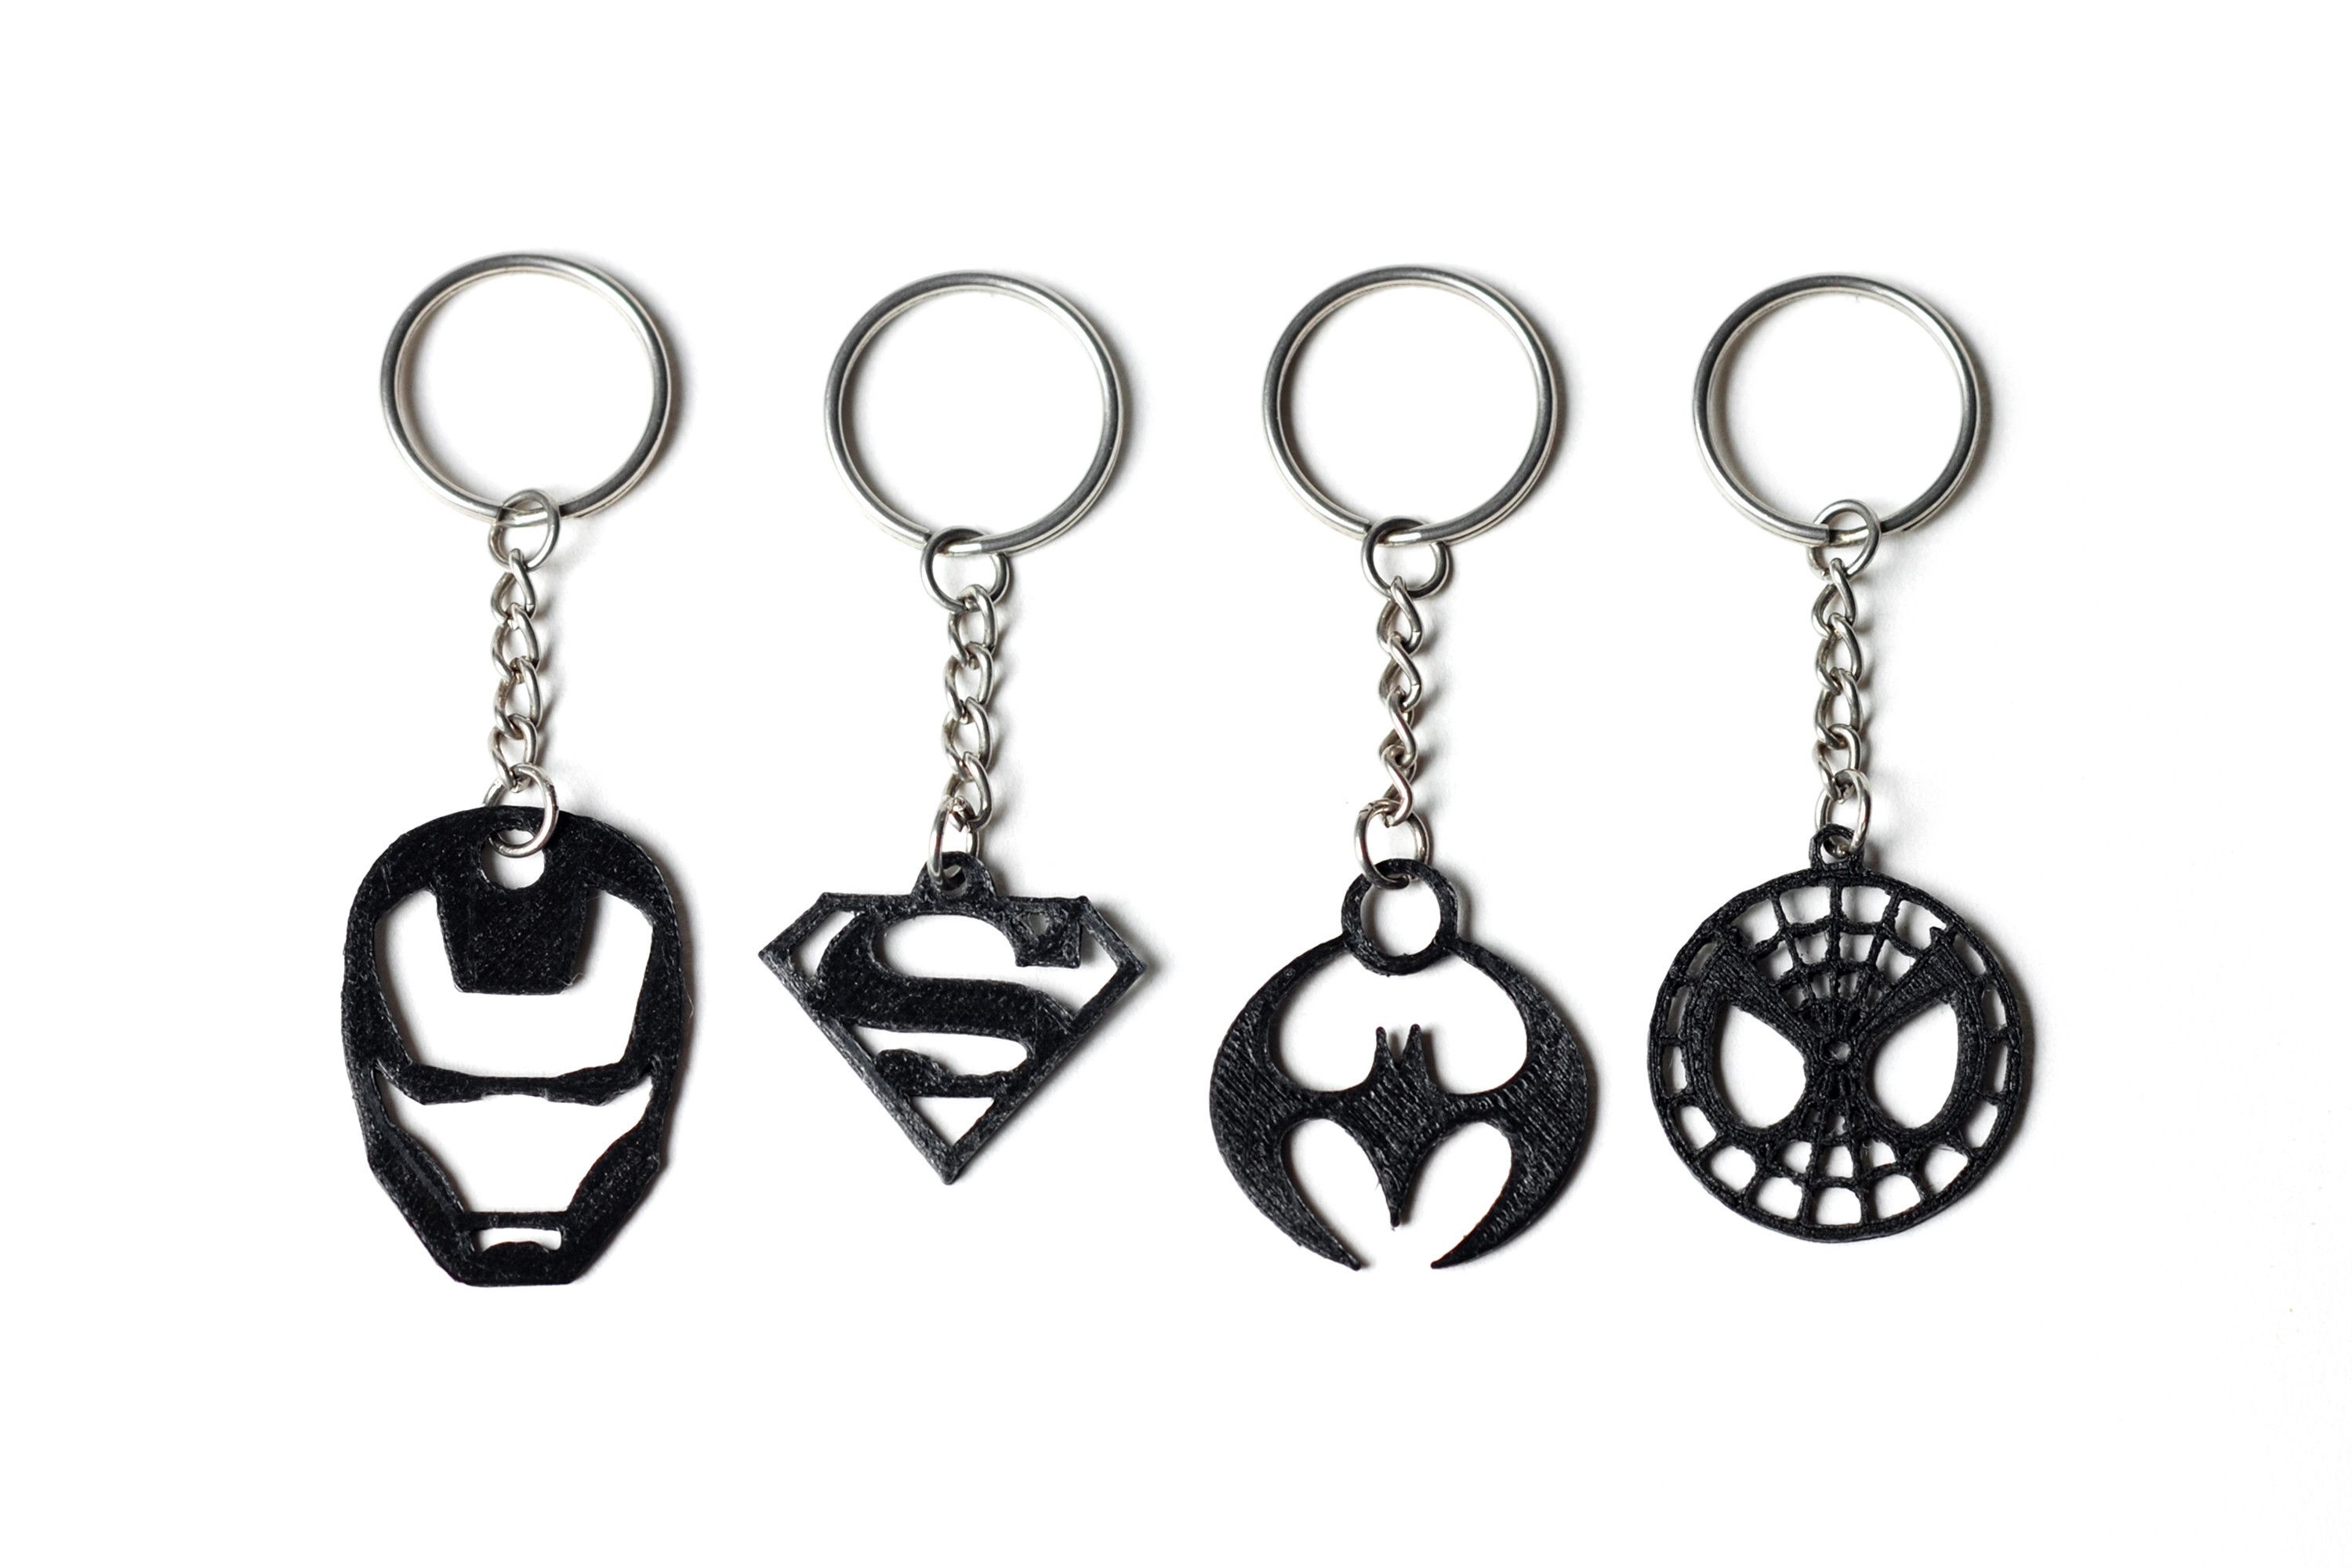 Superheroes_keychains.jpg Télécharger fichier STL gratuit Collection de porte-clés Superhero • Design pour impression 3D, FORMBYTE